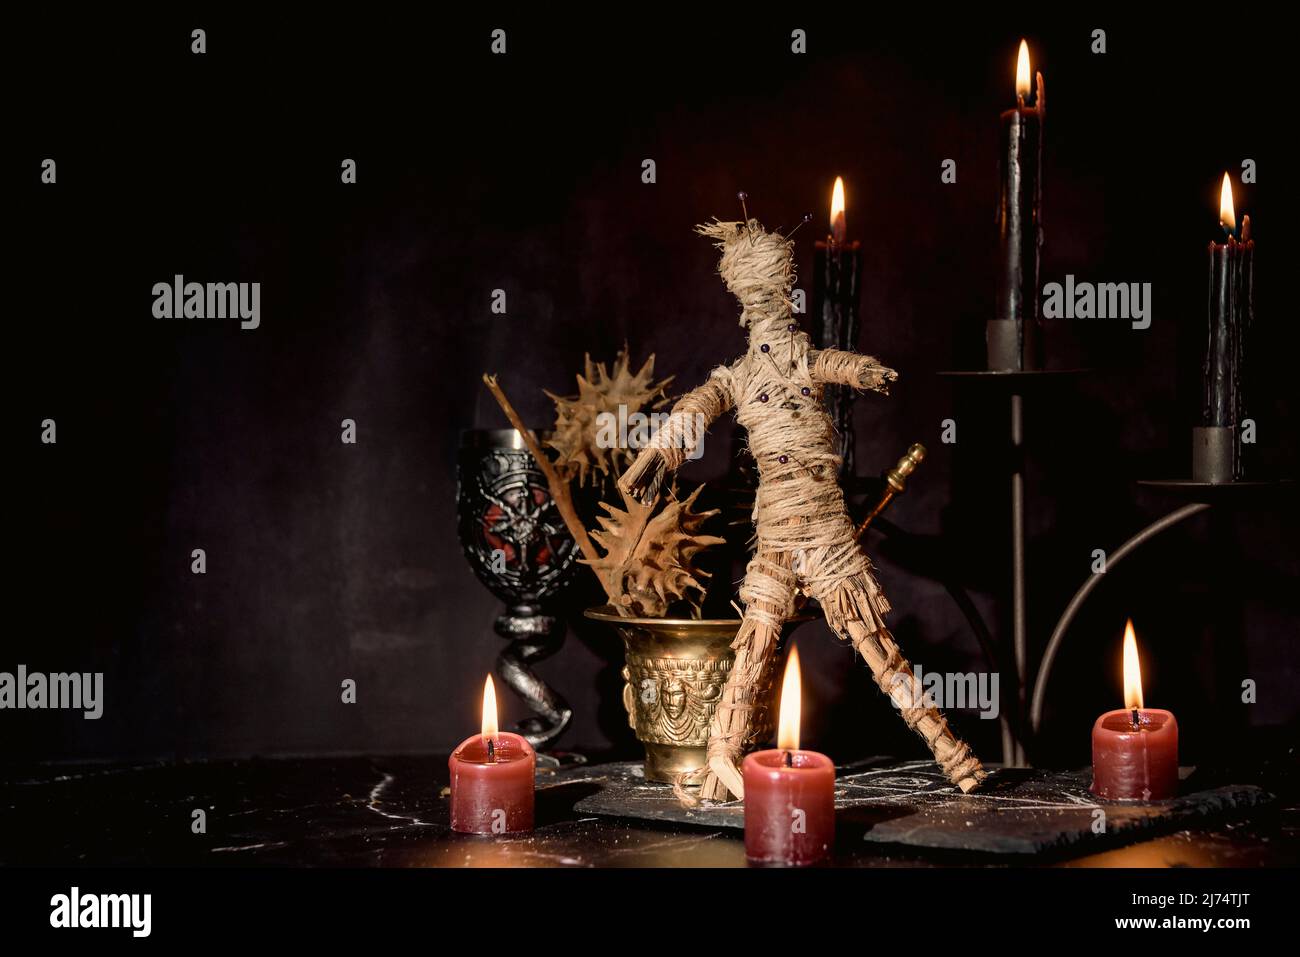 Bambola Voodoo, candele nere, pentagramma e vecchi libri sul tavolo delle streghe. Concetto occulto, esoterico, divinazione e wicca. Mistico, voodoo e vintage Foto Stock